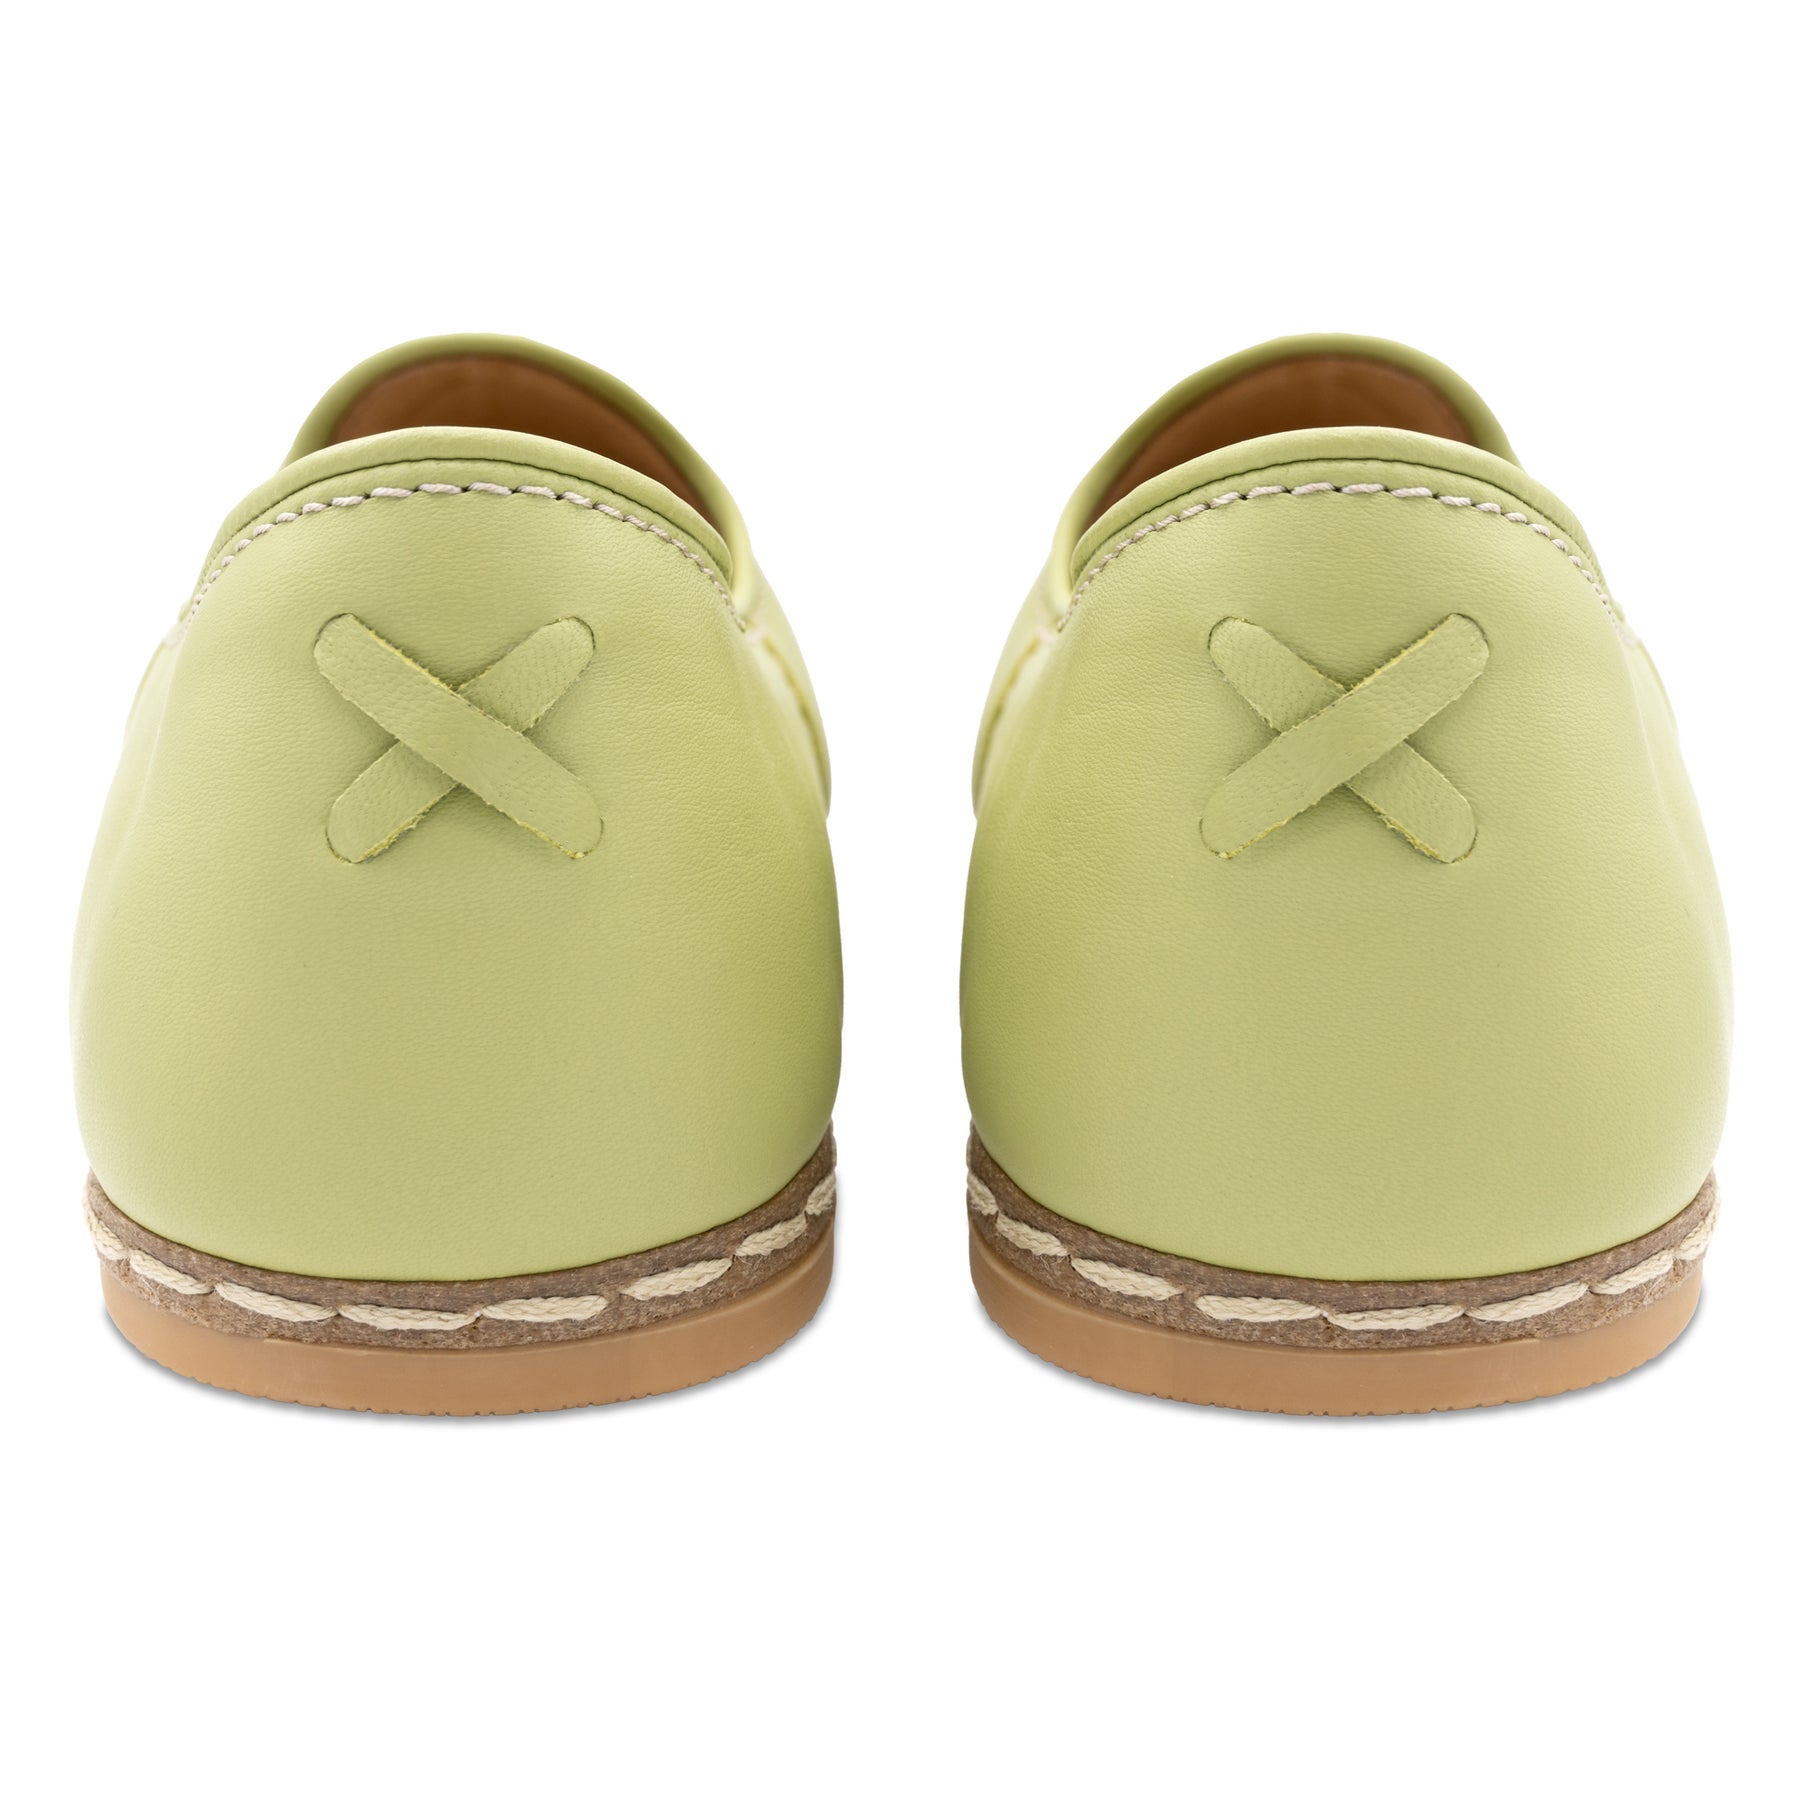 Pistachio Slip Ons for Men - Charix Shoes